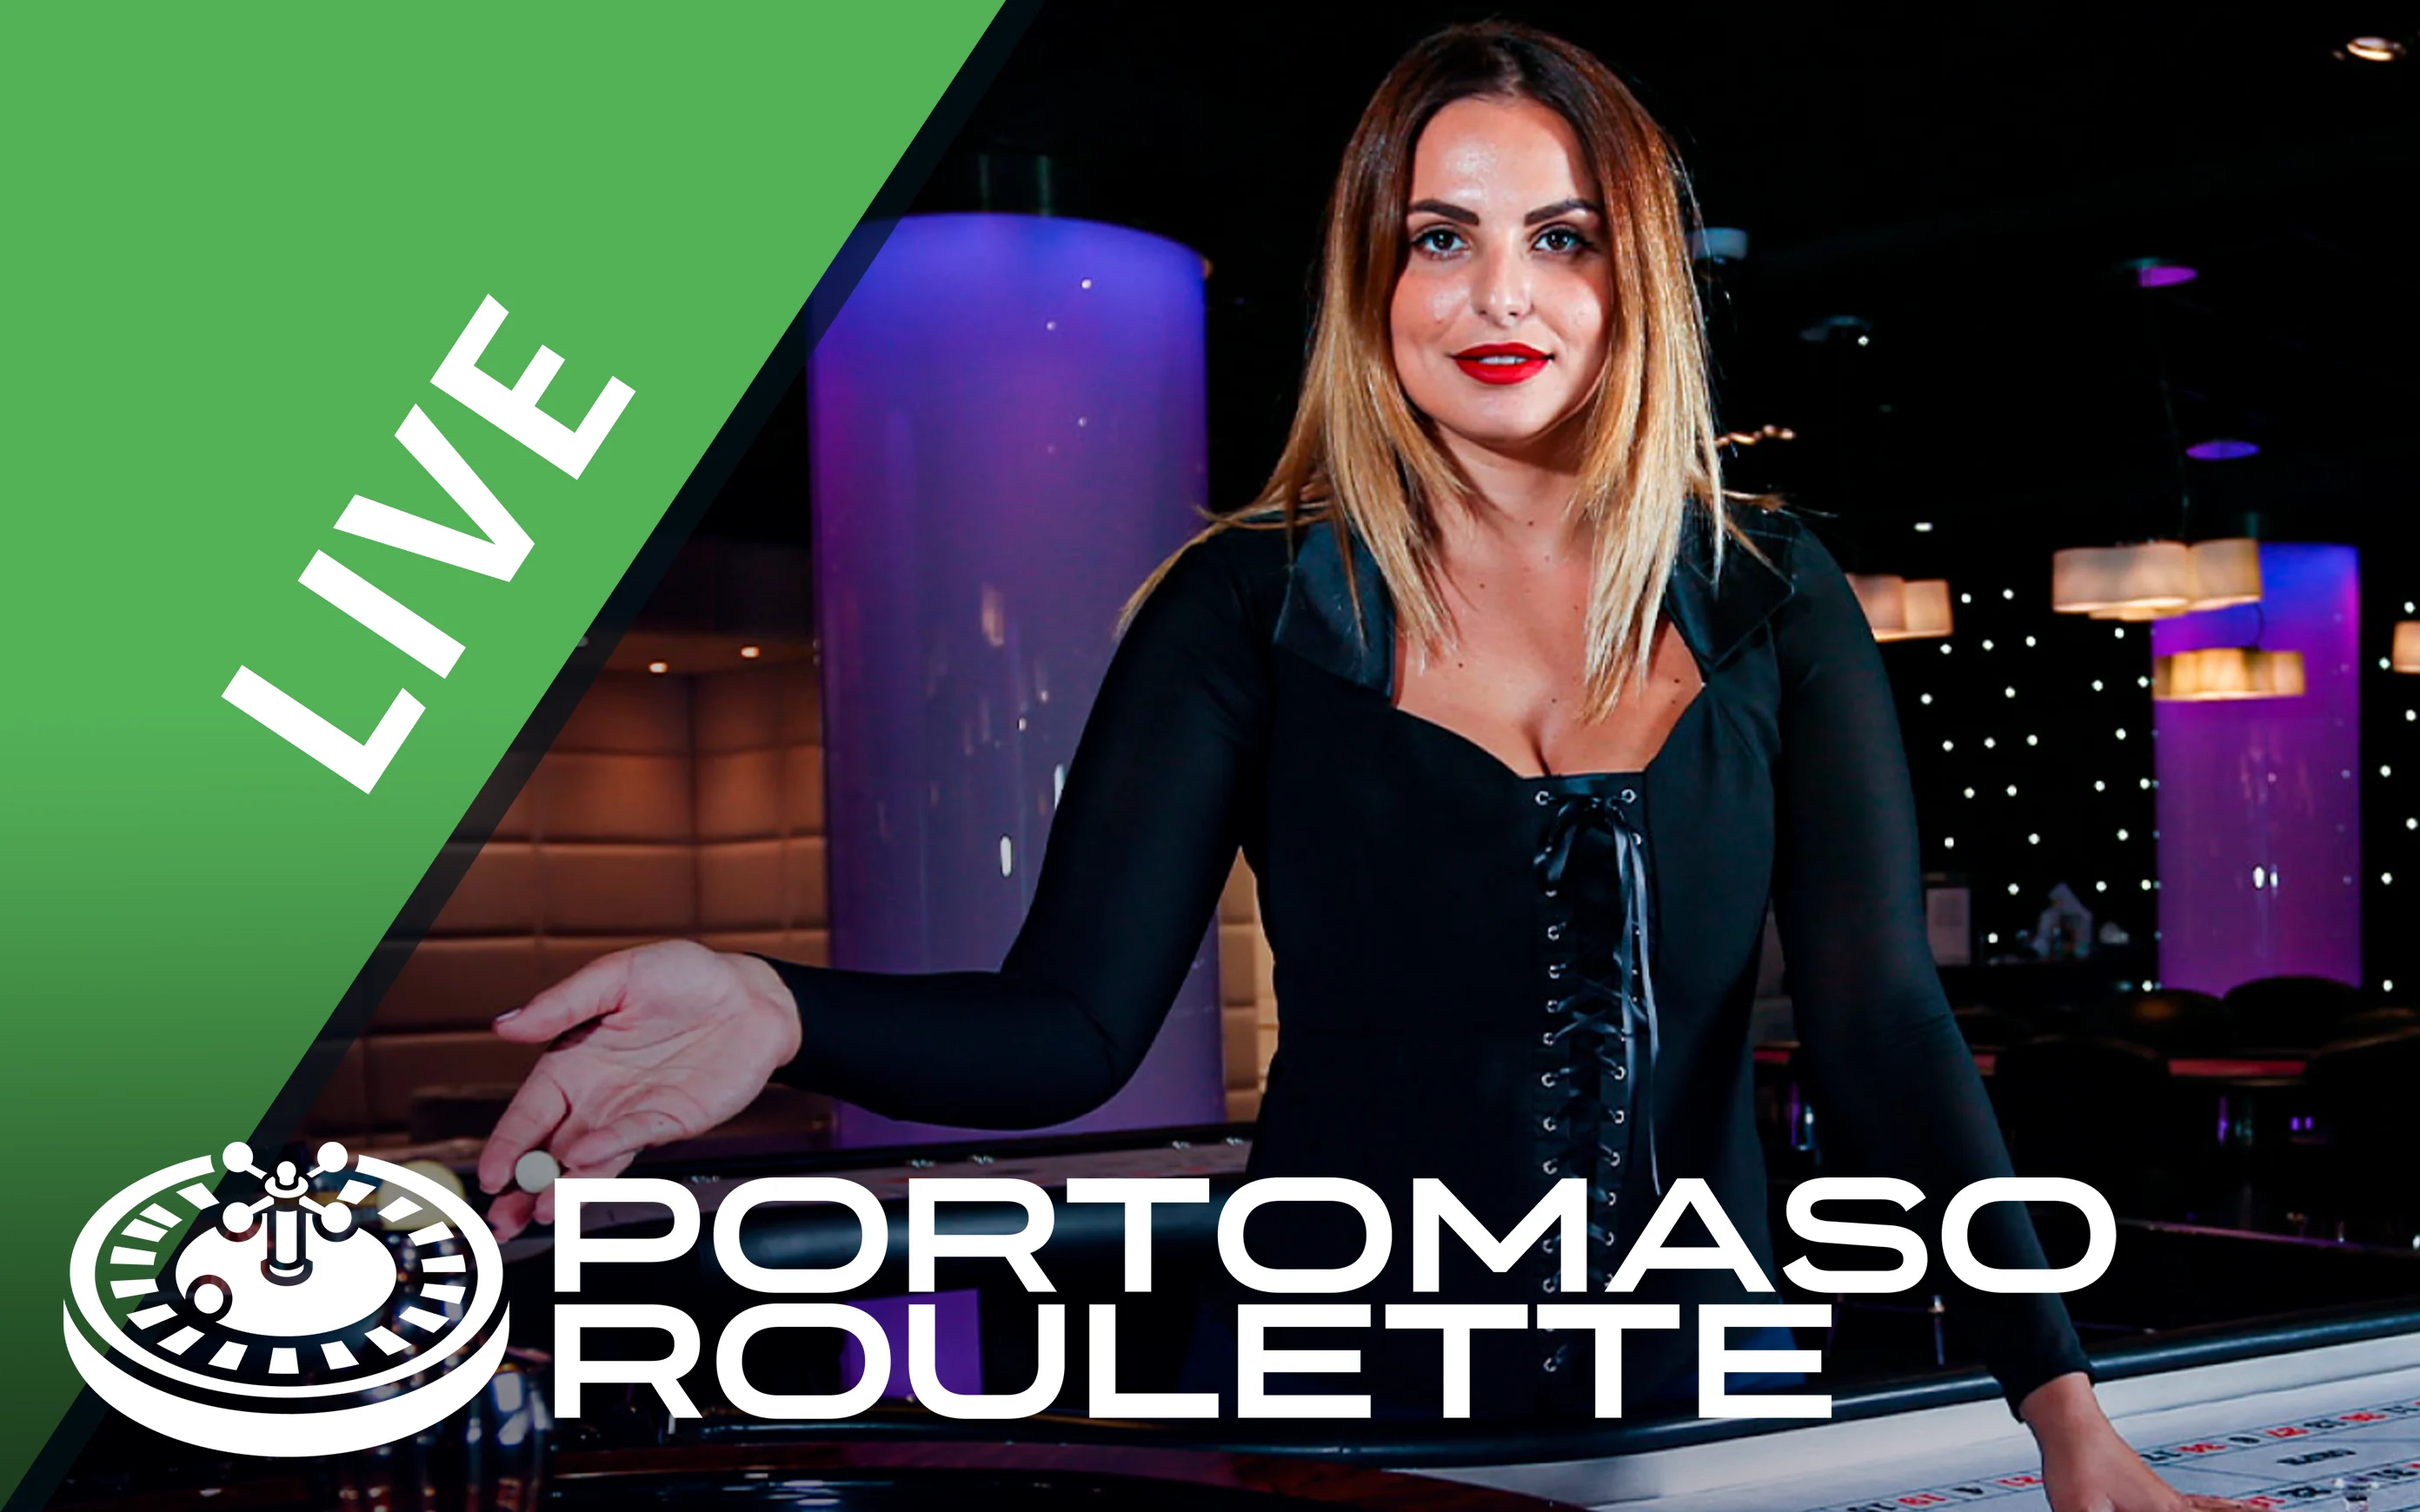 Jogue Portomaso Roulette no casino online Starcasino.be 